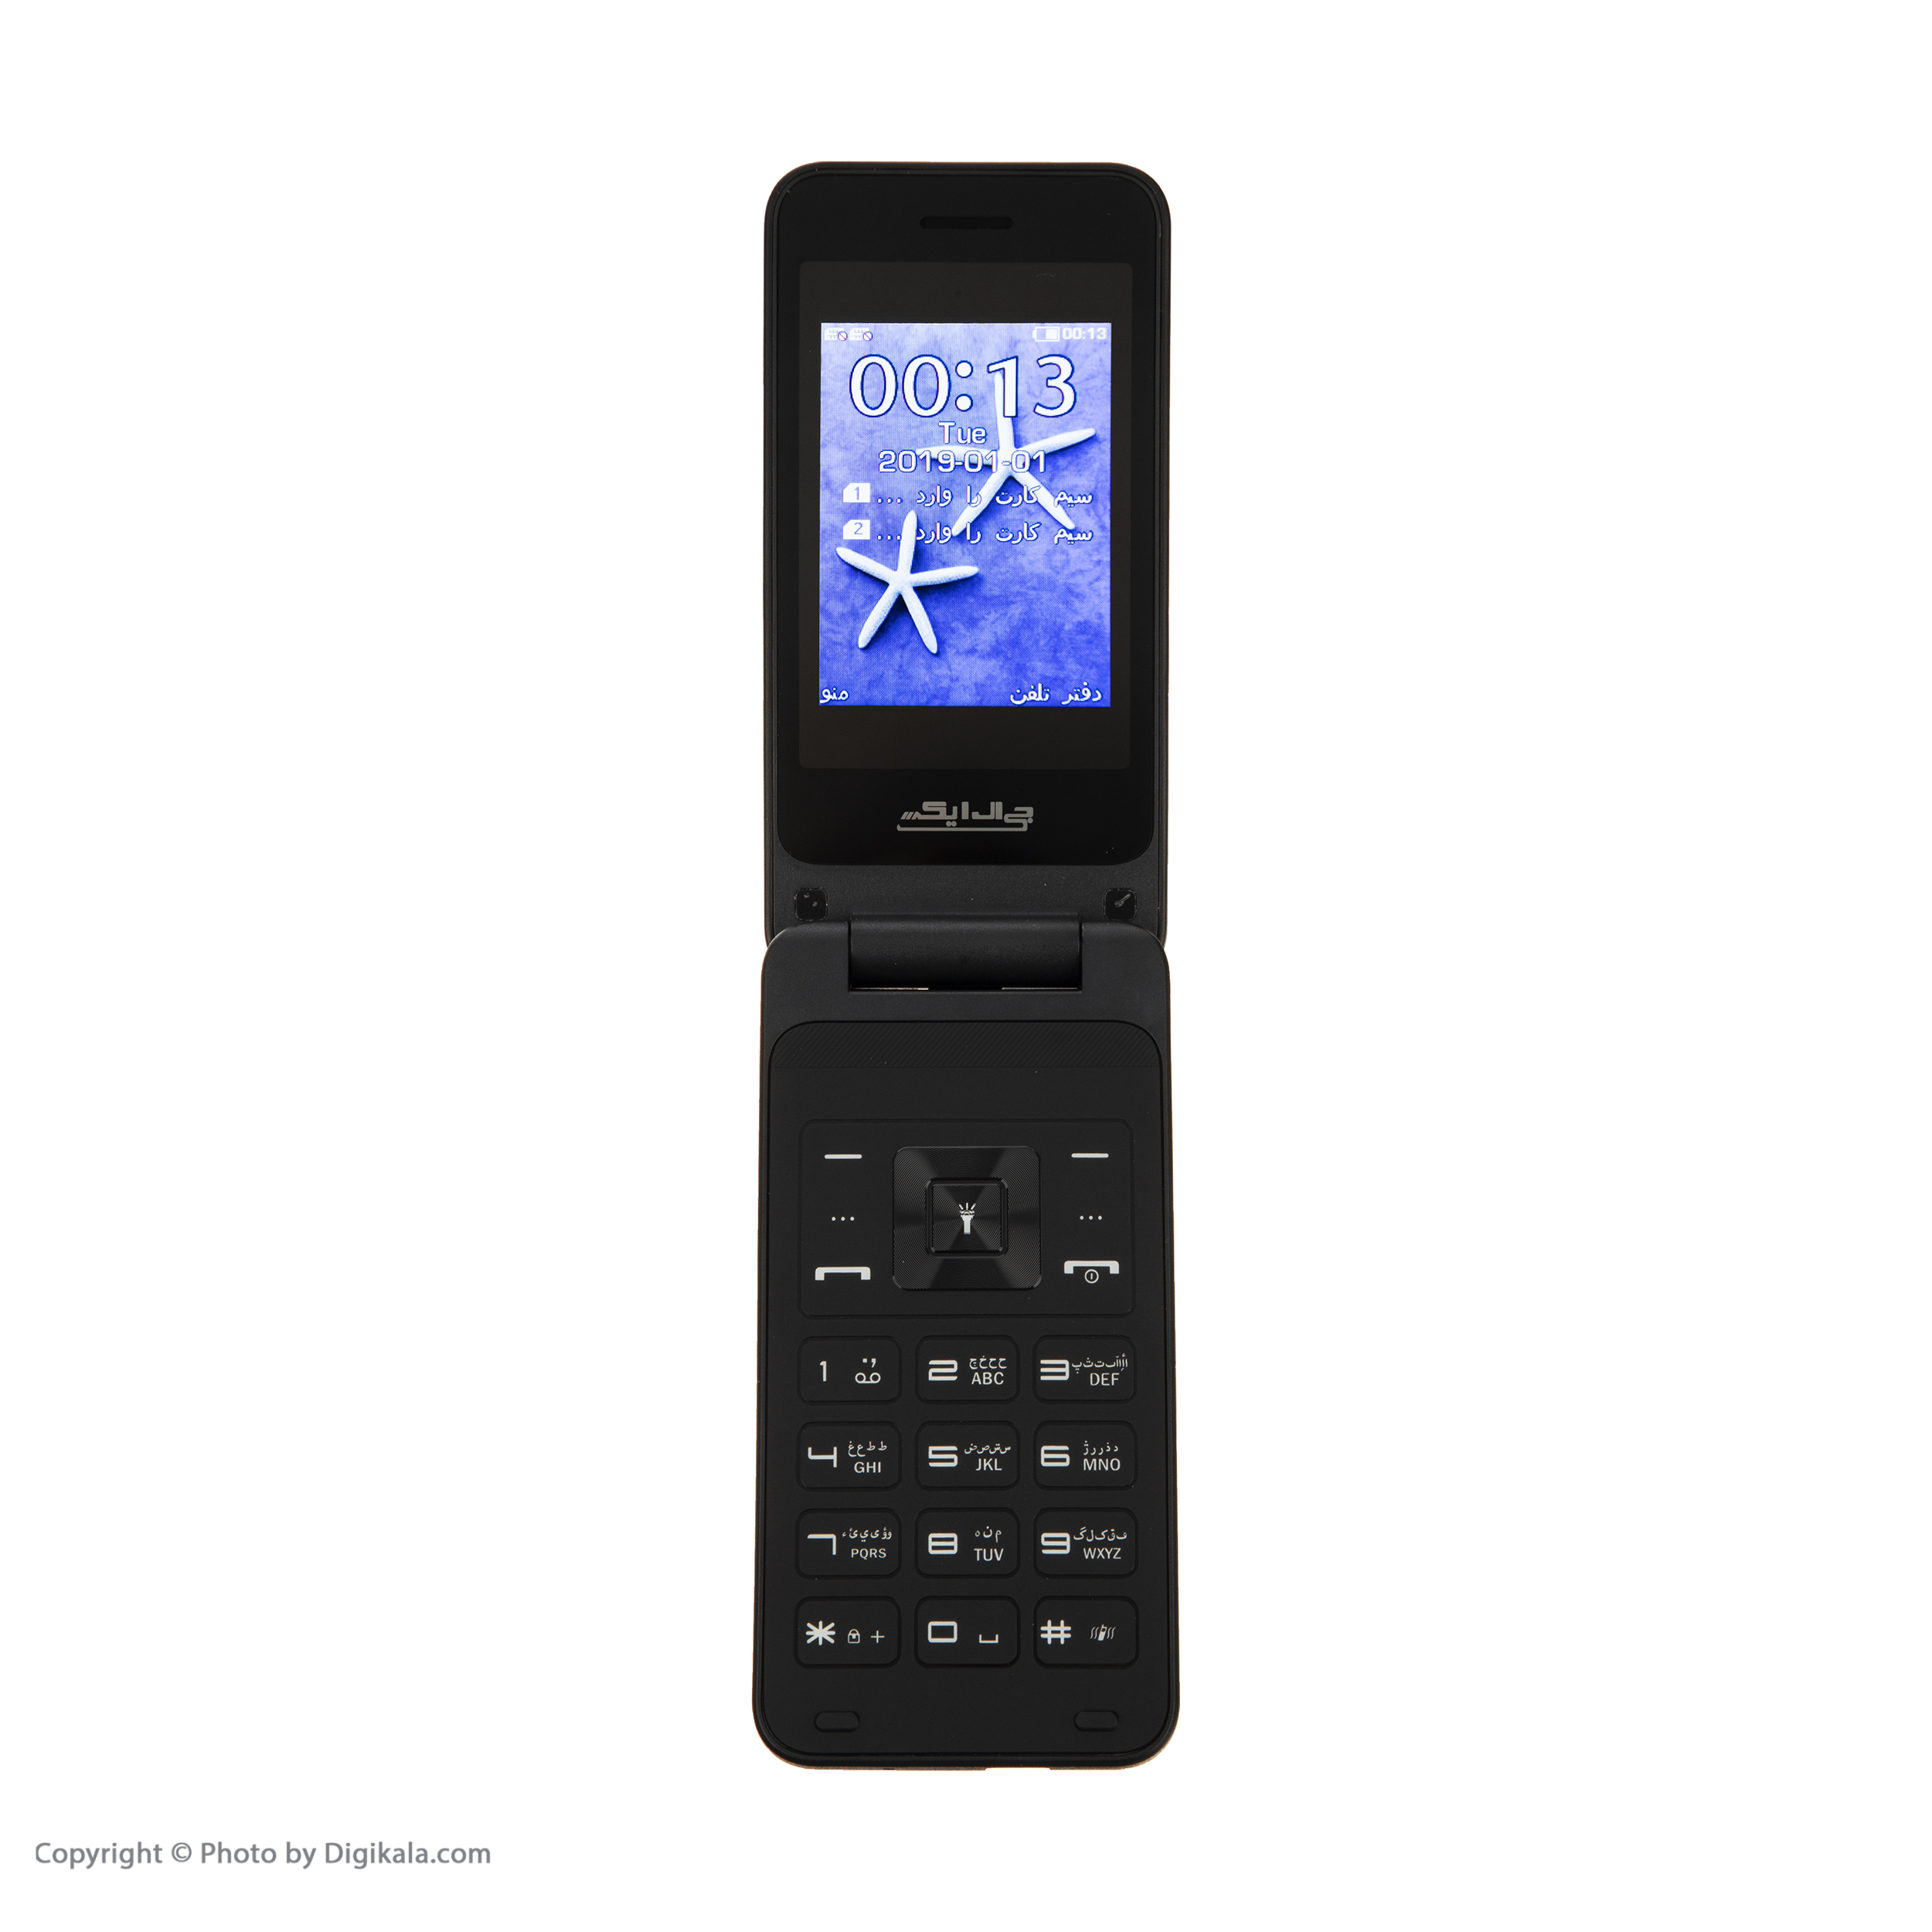 قیمت و مشخصات گوشی موبایل جی ال ایکس مدل F201 دو سیم کارت - زیراکو